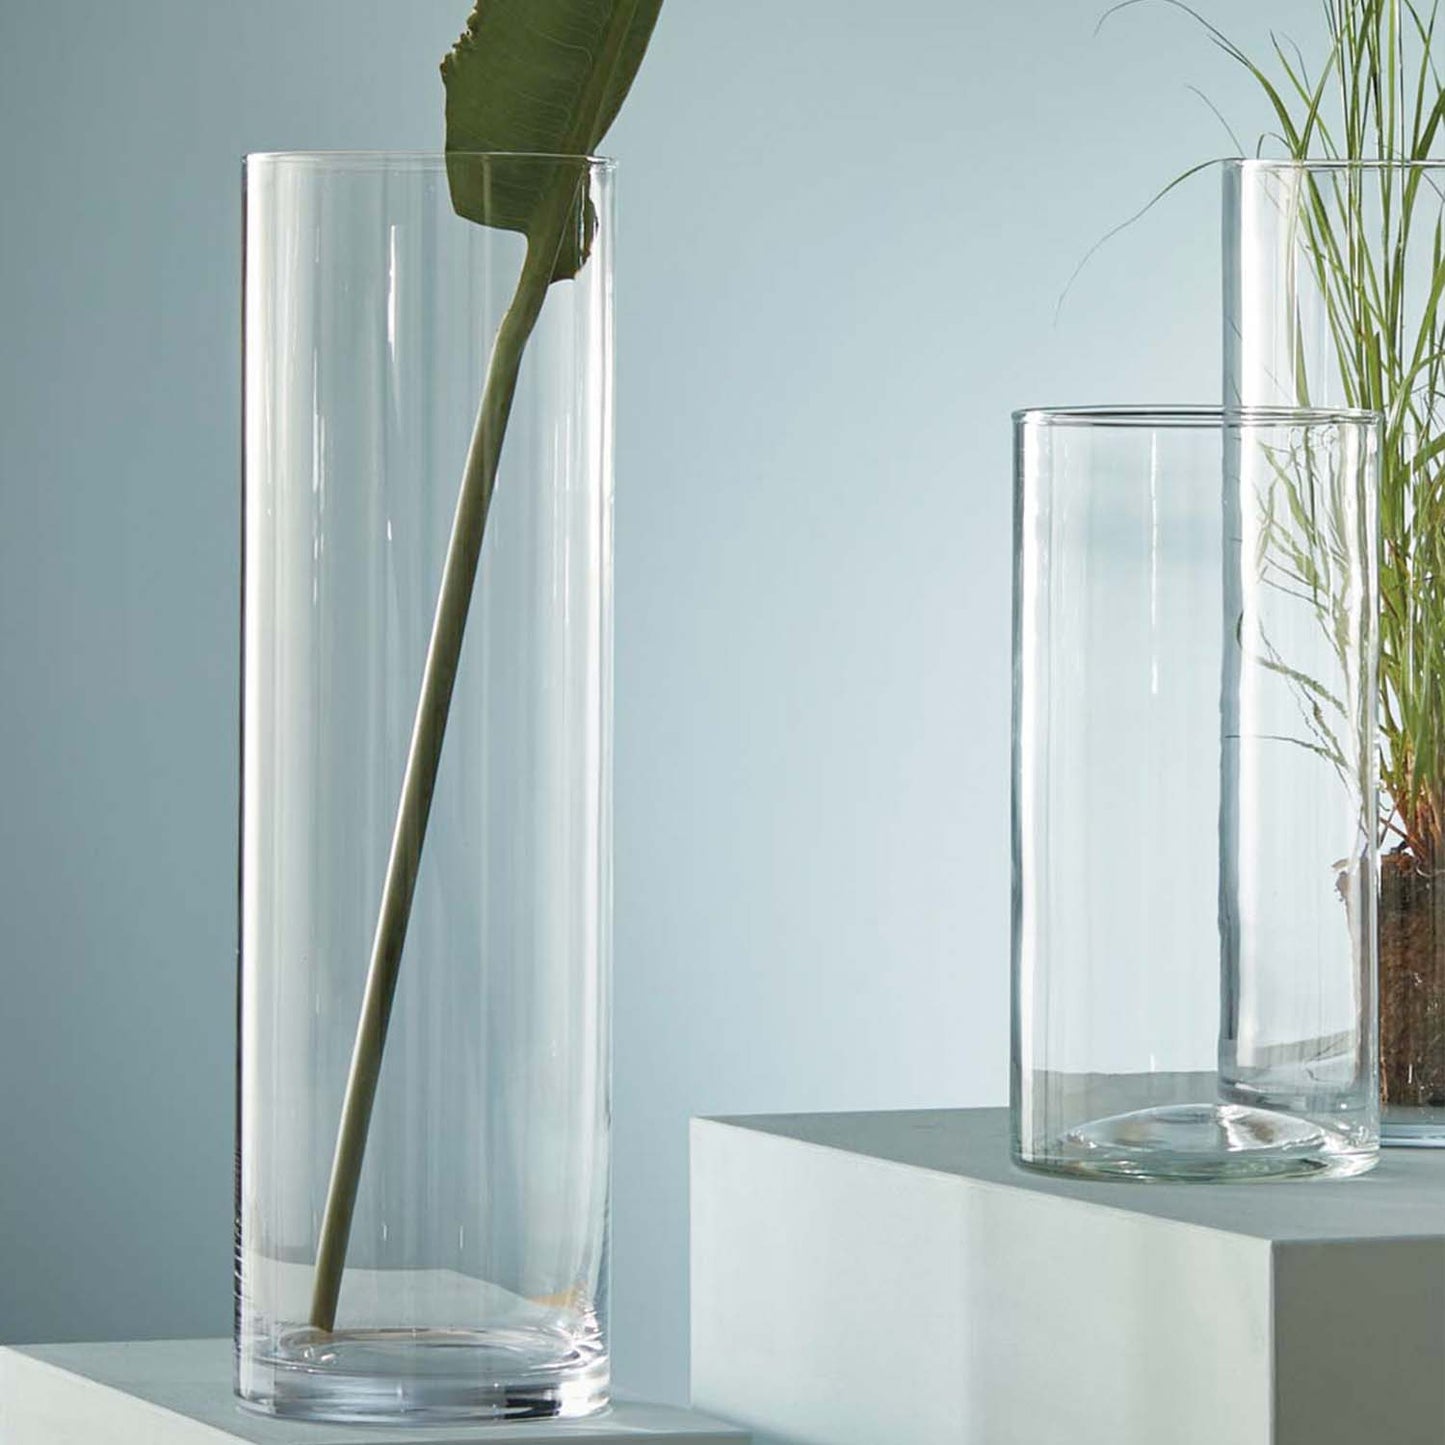 3er Set, Lotta Zylinder Vase, Glas, drei Größen